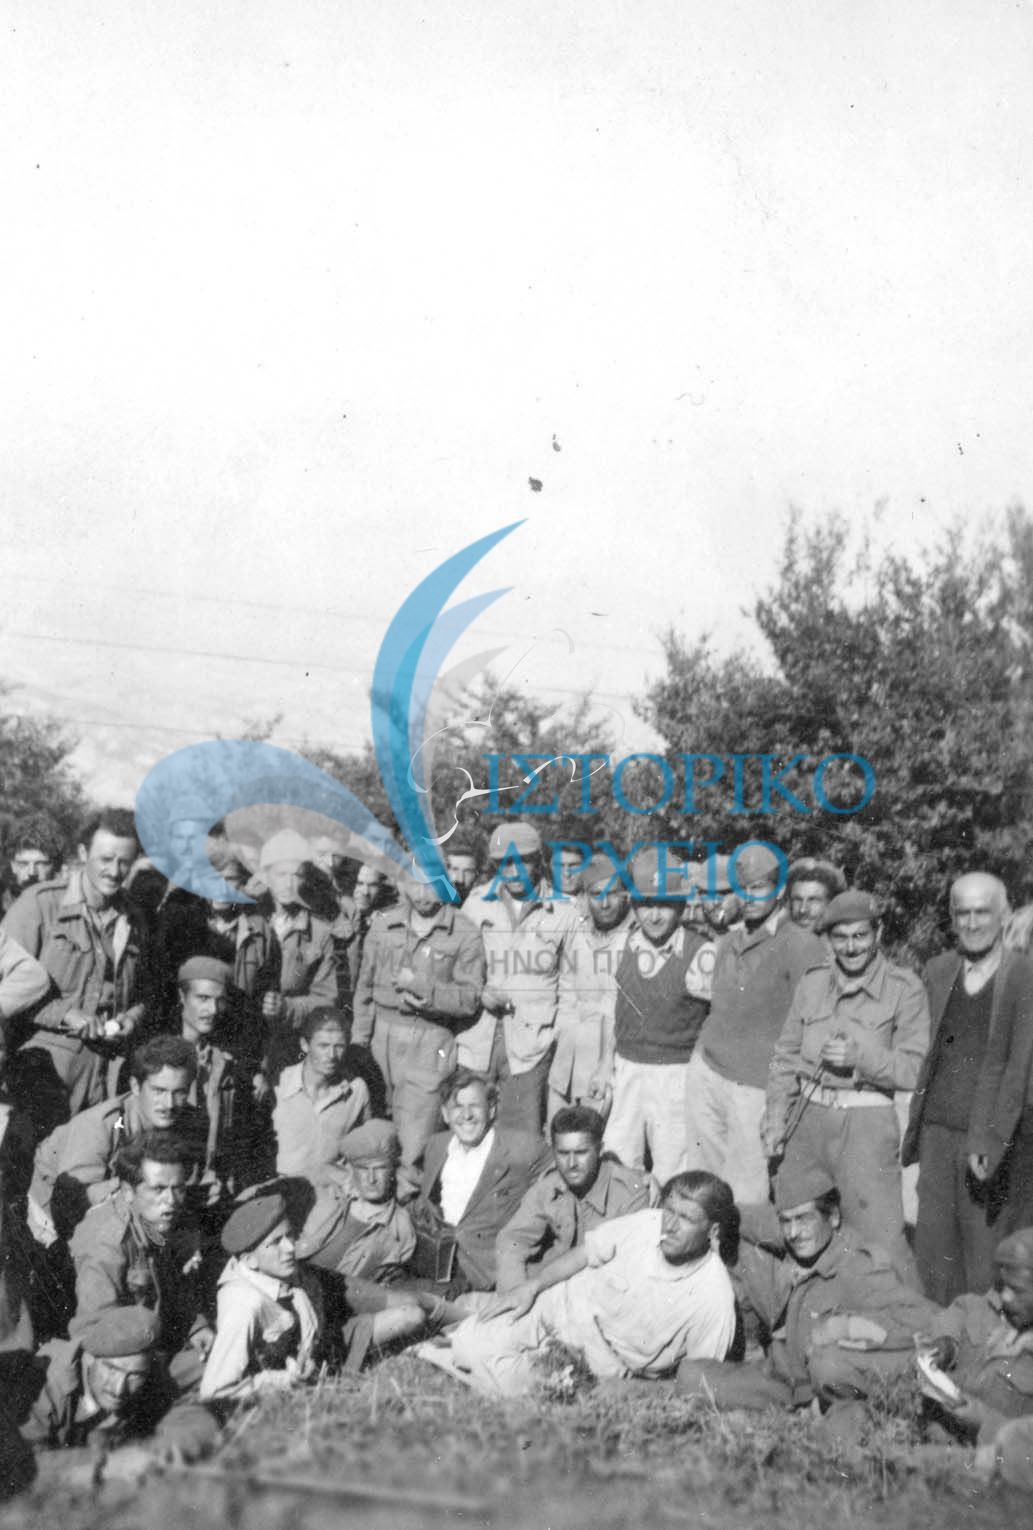 Πρόσκοποι της Καστοριάς με τον περιφερειακό έφορο Γιαννόπουλο και τον υπολοχαγό Γιαννούση και στρατιώτες του Εθνικού Στρατού στην κορυφή Αλεβίτσας του Γράμμου κατά τη διάρκεια του εμφυλίου πολέμου τον Απρίλιο του 1948.